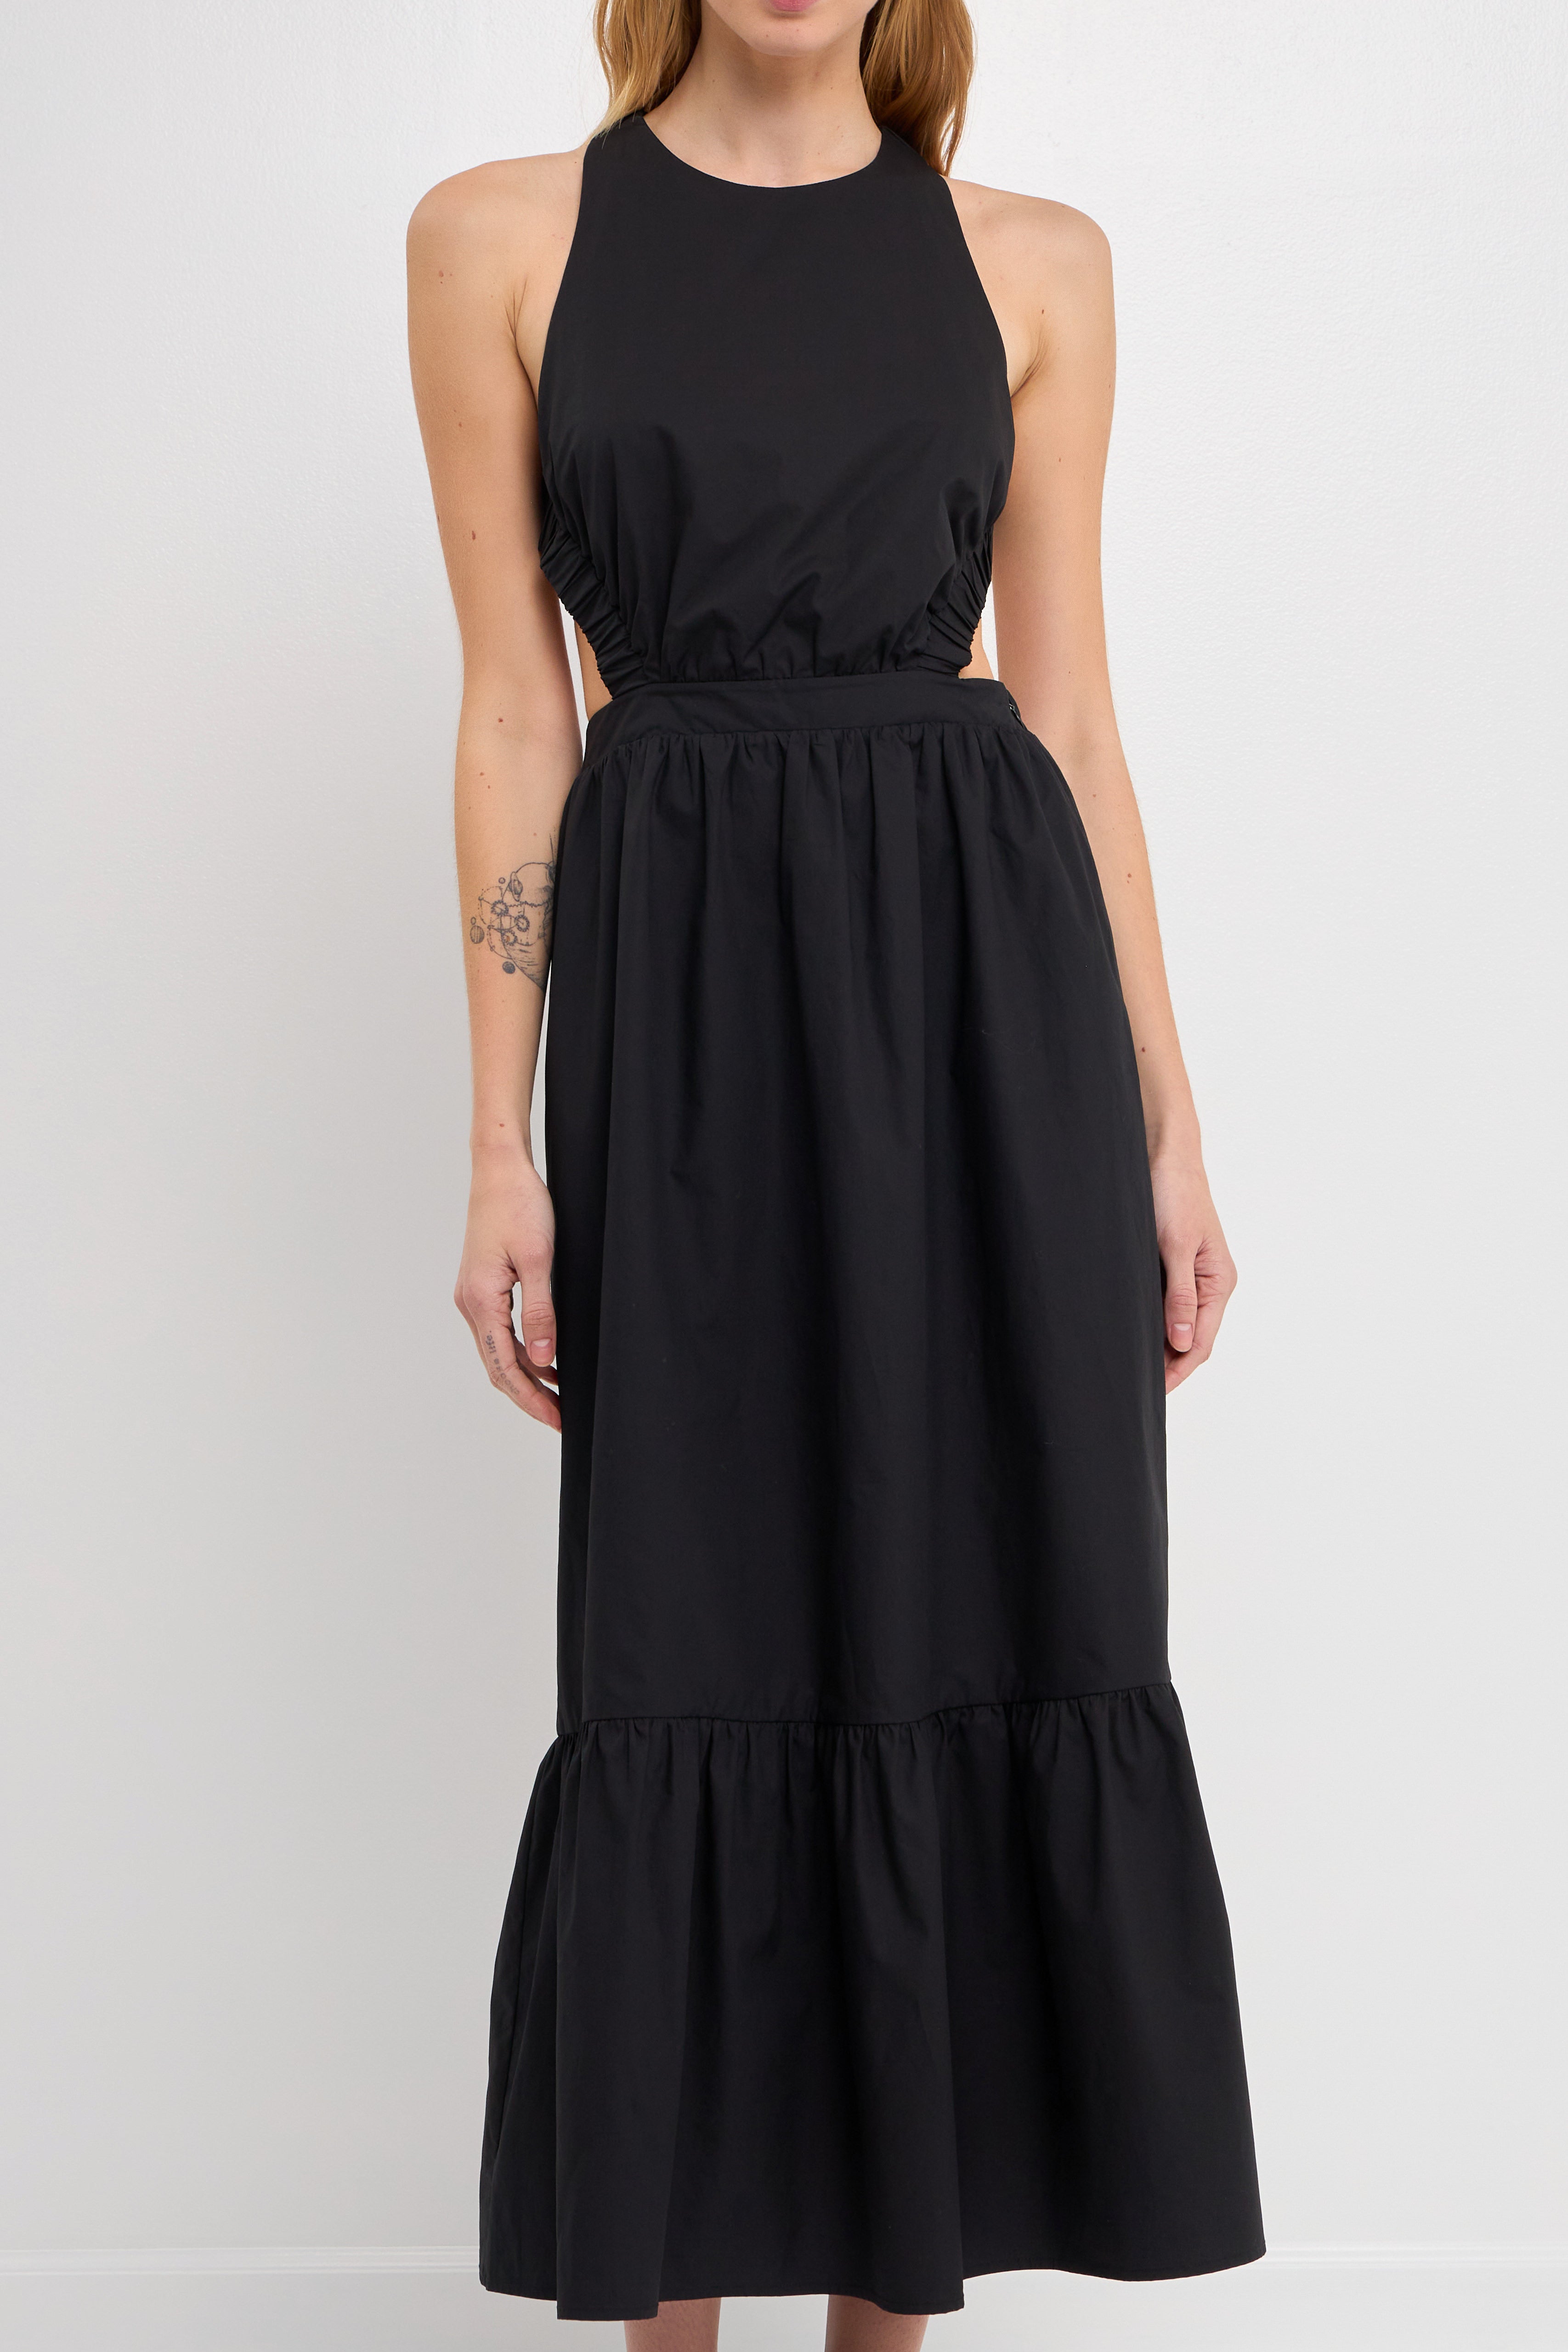 Elastic Detail Sleeveless Dress